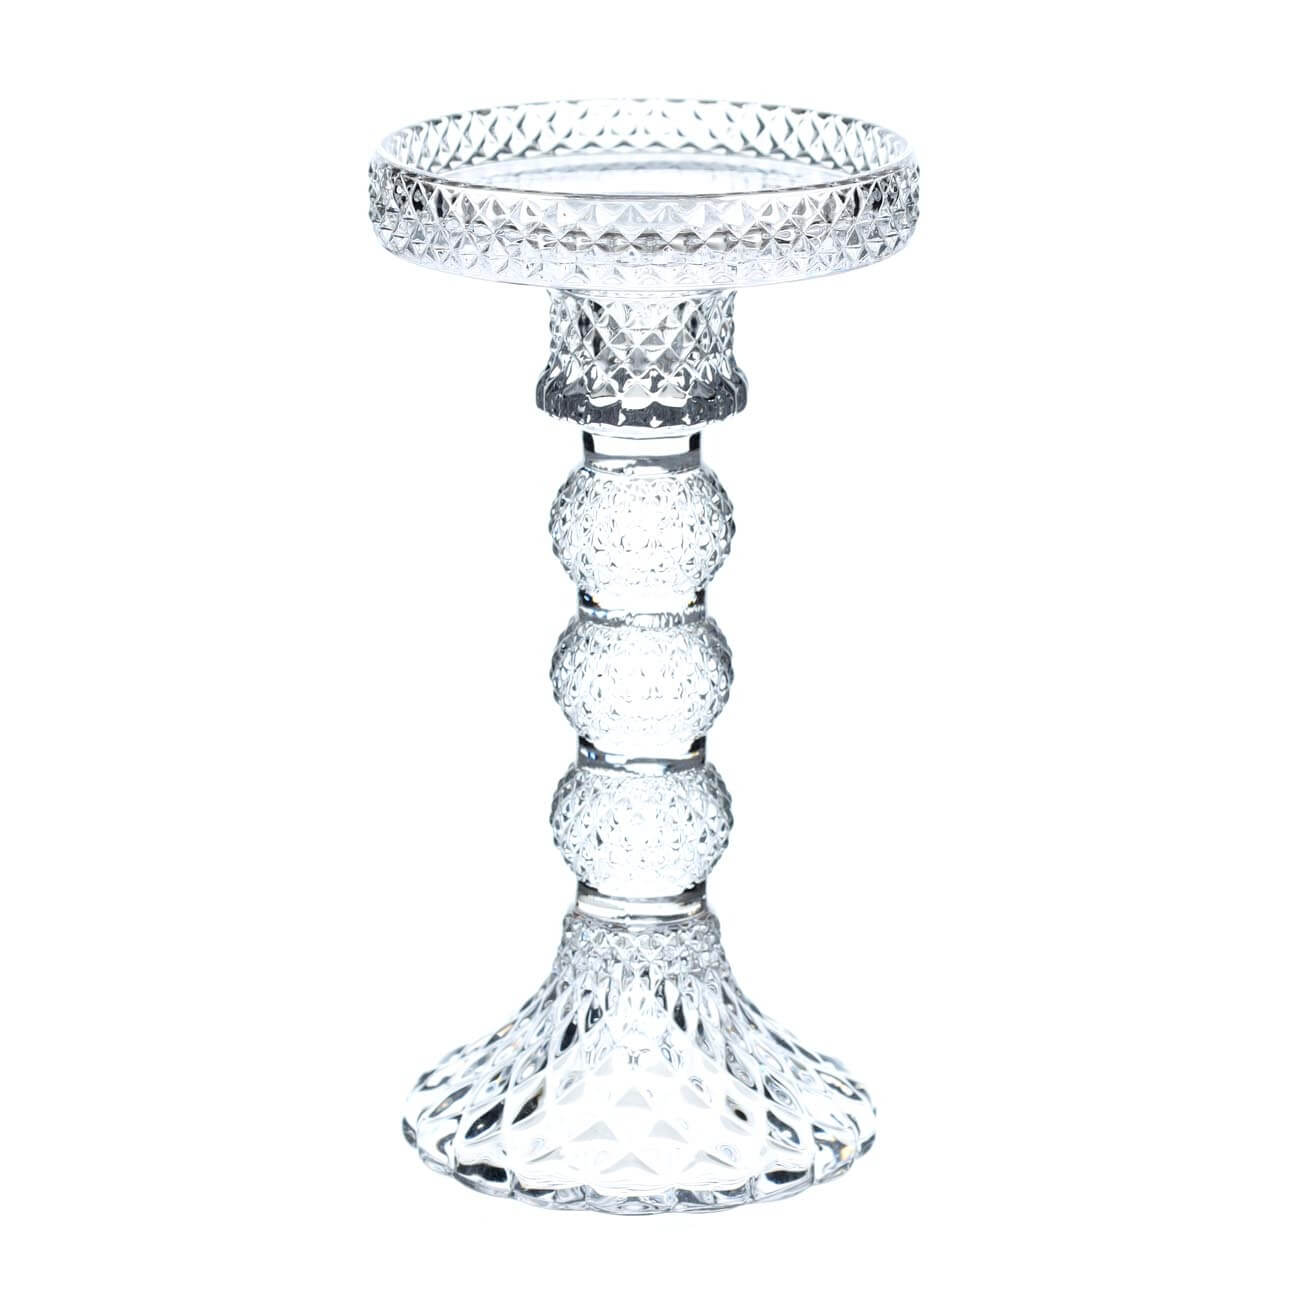 Подсвечник, 16 см, для одной свечи, на ножке, стекло, Naiad kuchenland набор для ванной 3 пр стекло пластик naiad